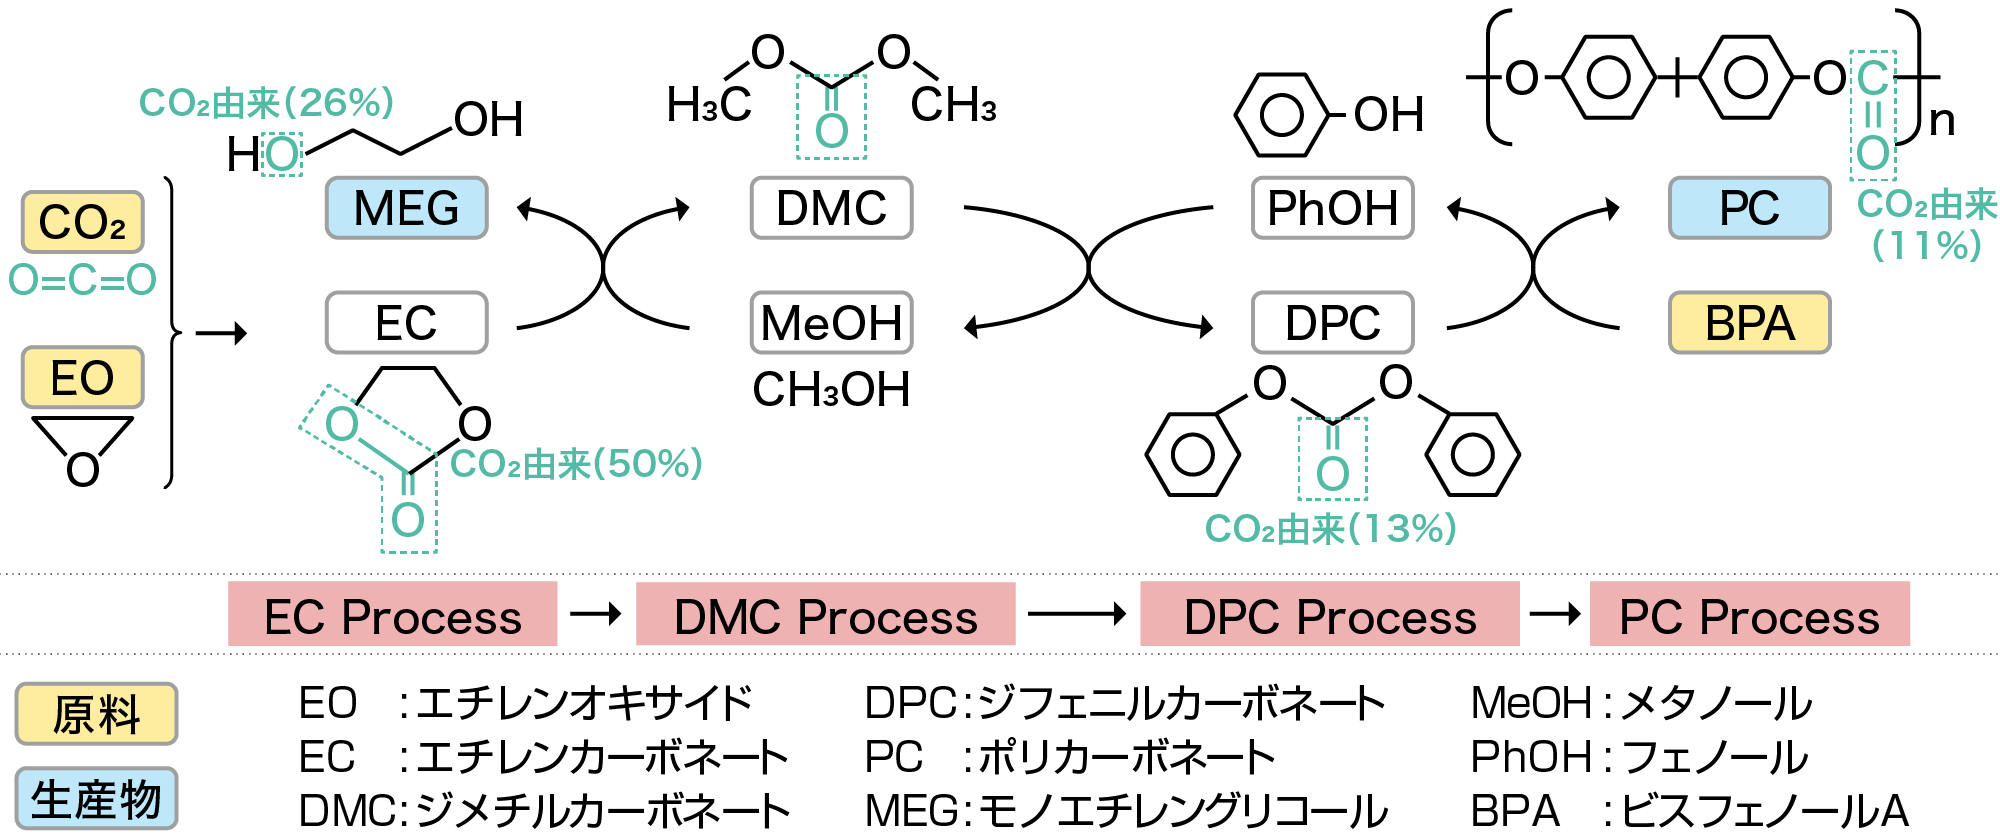 旭化成のポリカーボネート合成プロセス